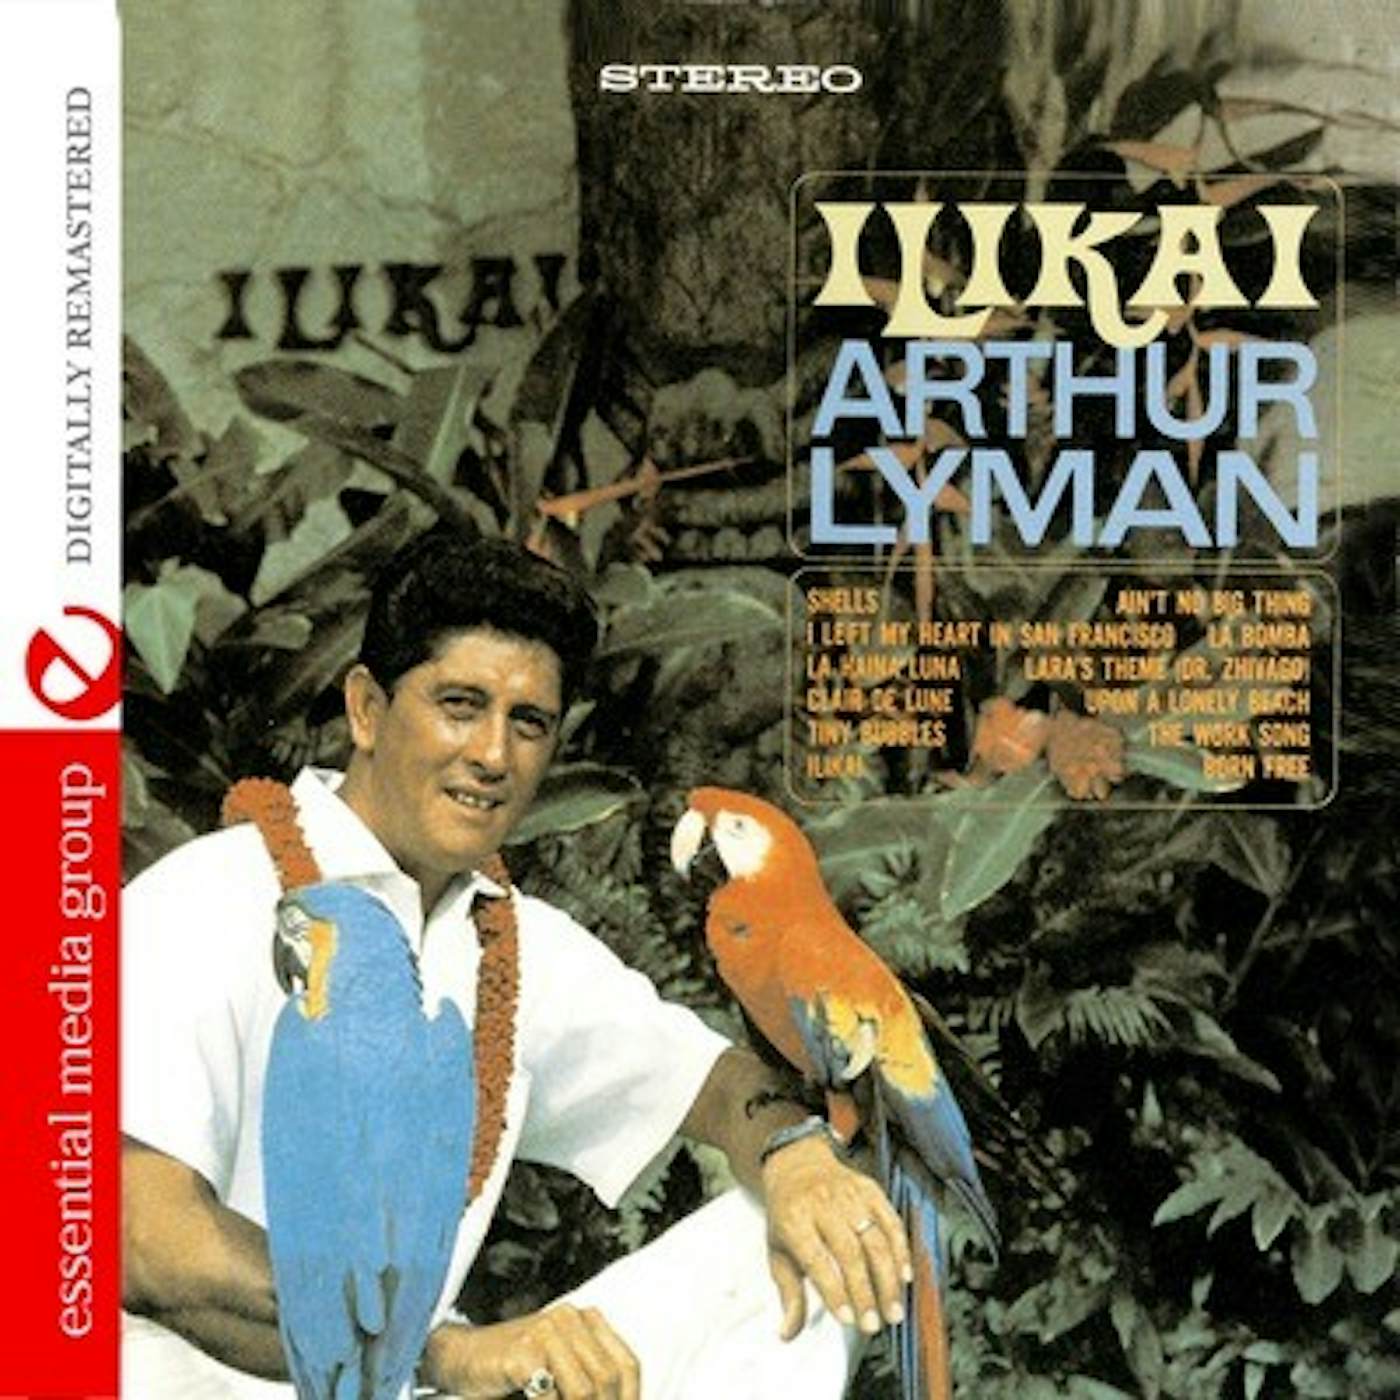 Arthur Lyman ILIKAI CD